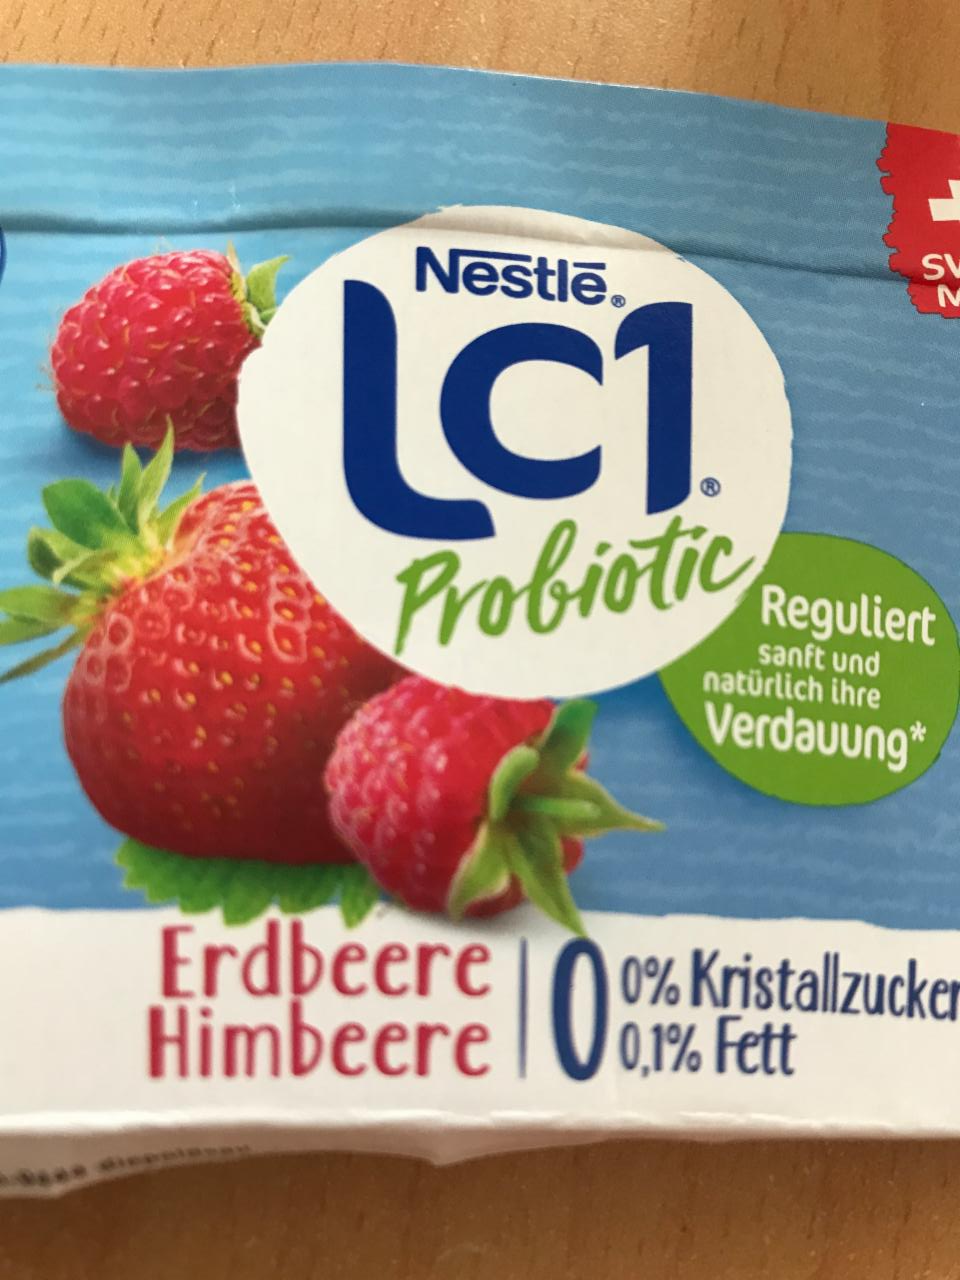 Fotografie - Lc1 probiotic Erdbeere Himbeere Nestle